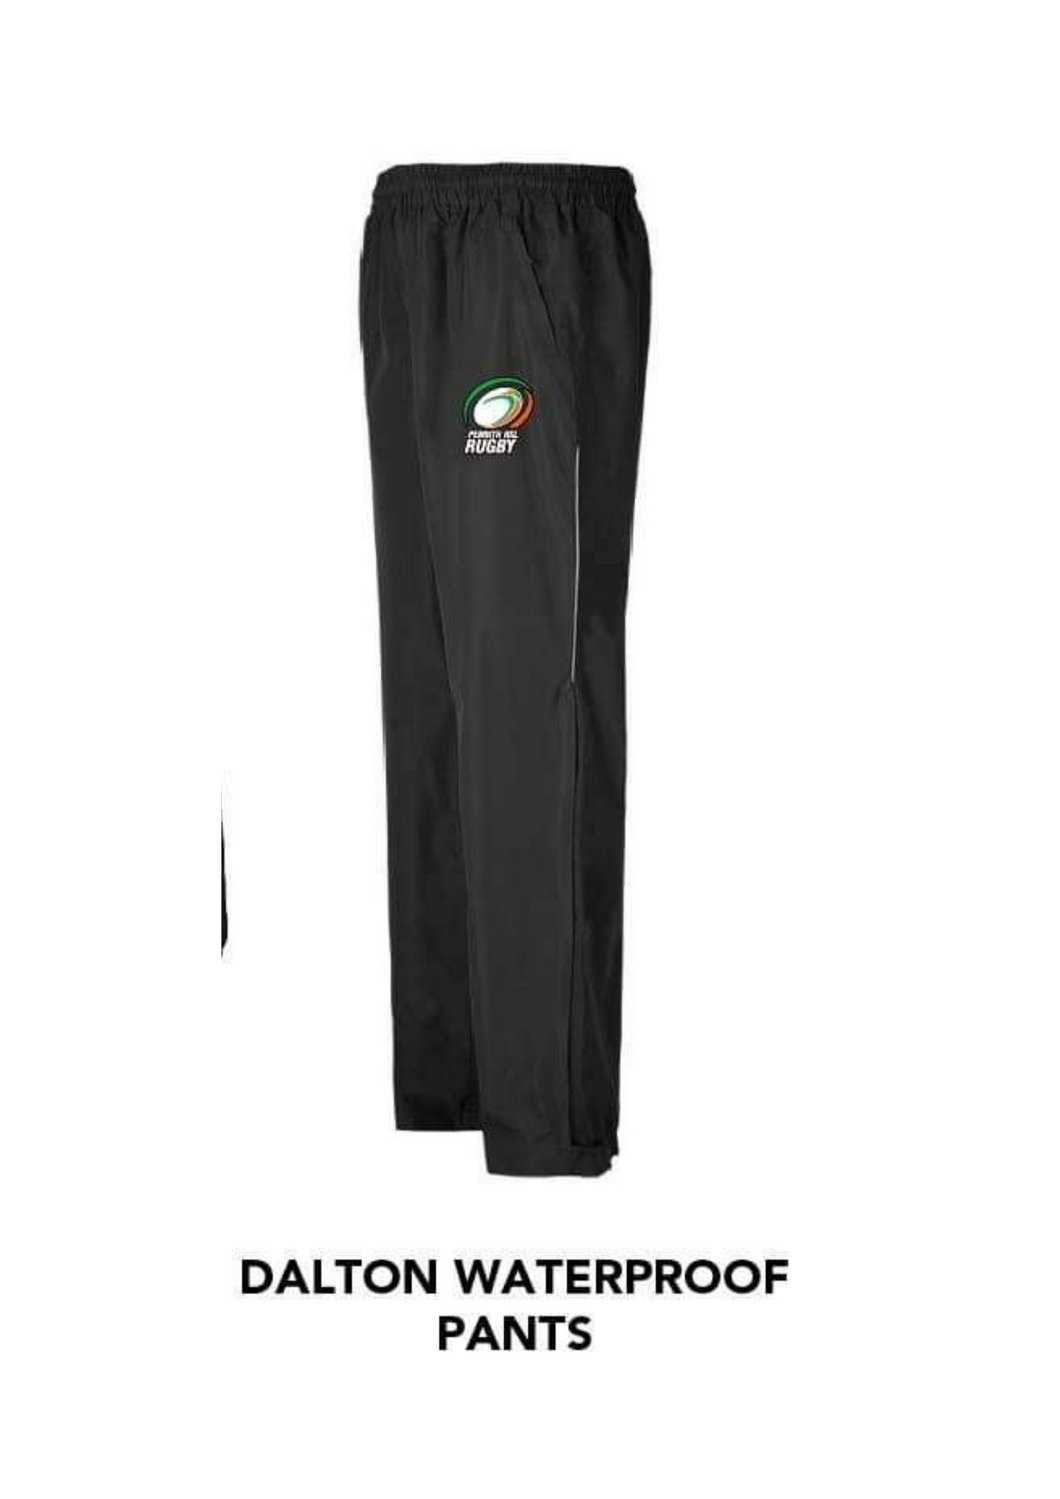 2021 Penrith RSL Waterproof Pants